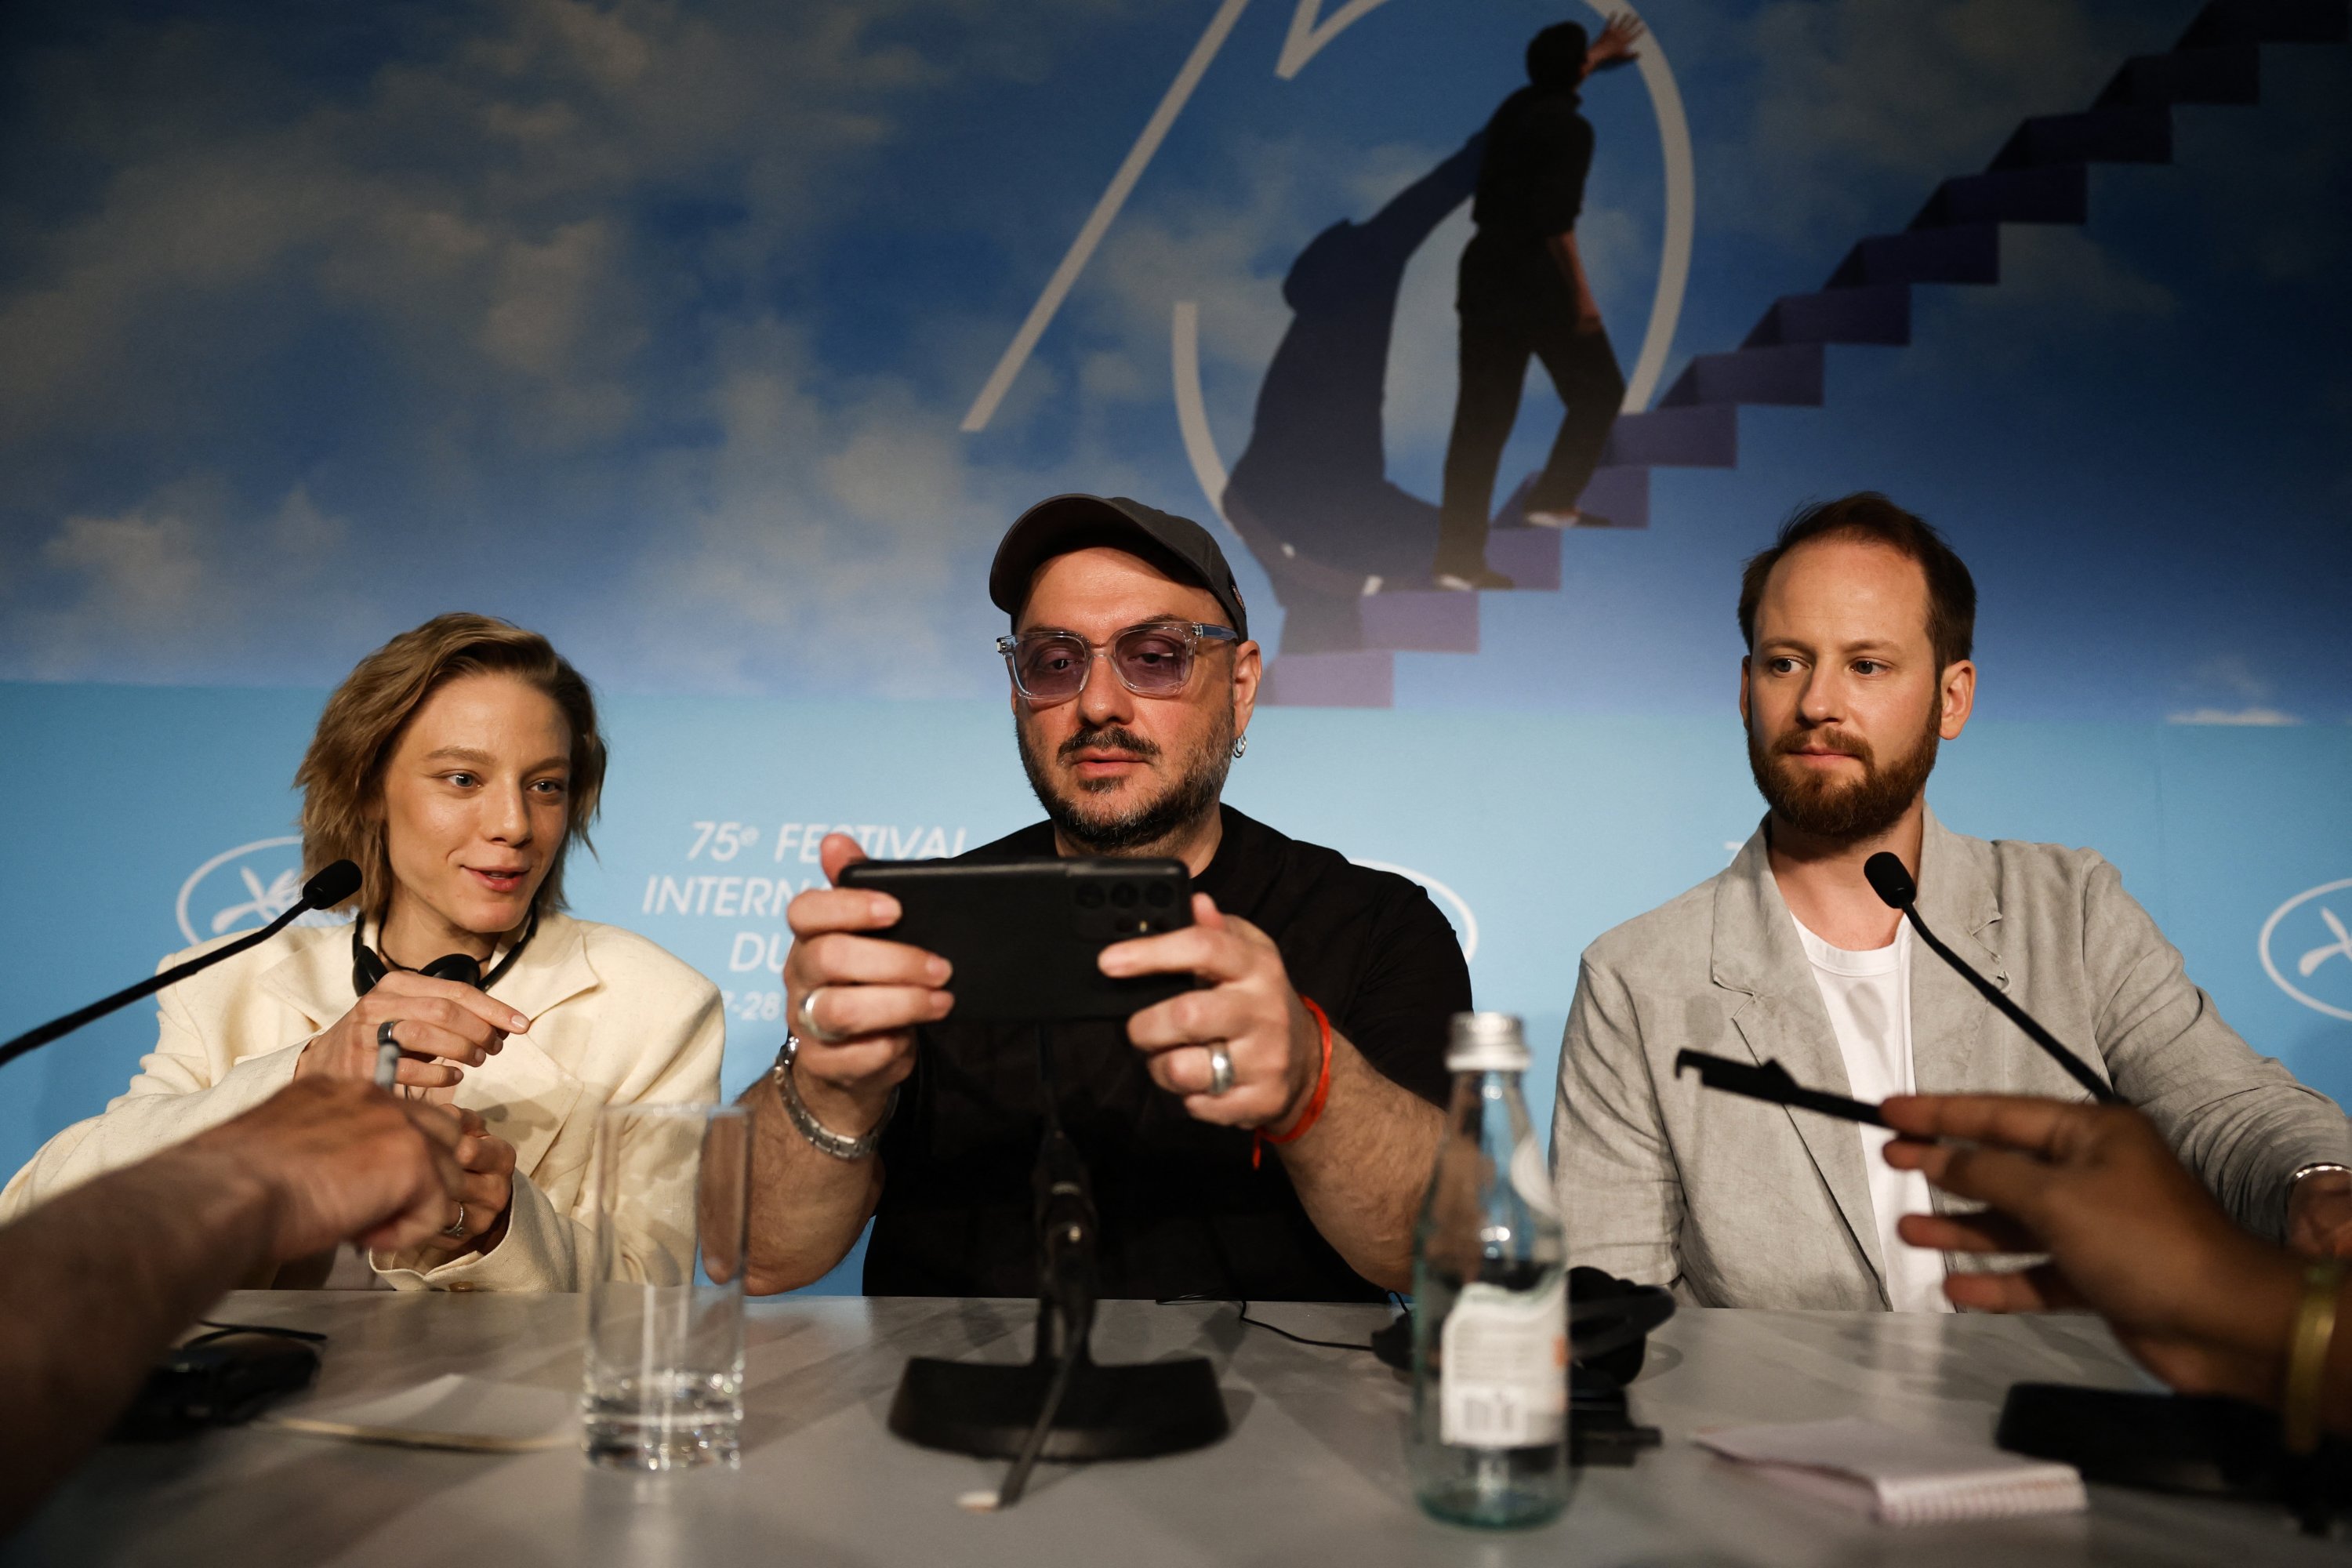 Sutradara Kirill Serebrennikov dan pemeran Alyona Mikhailova dan Odin Lund Biron berfoto selfie di akhir konferensi pers untuk film tersebut 